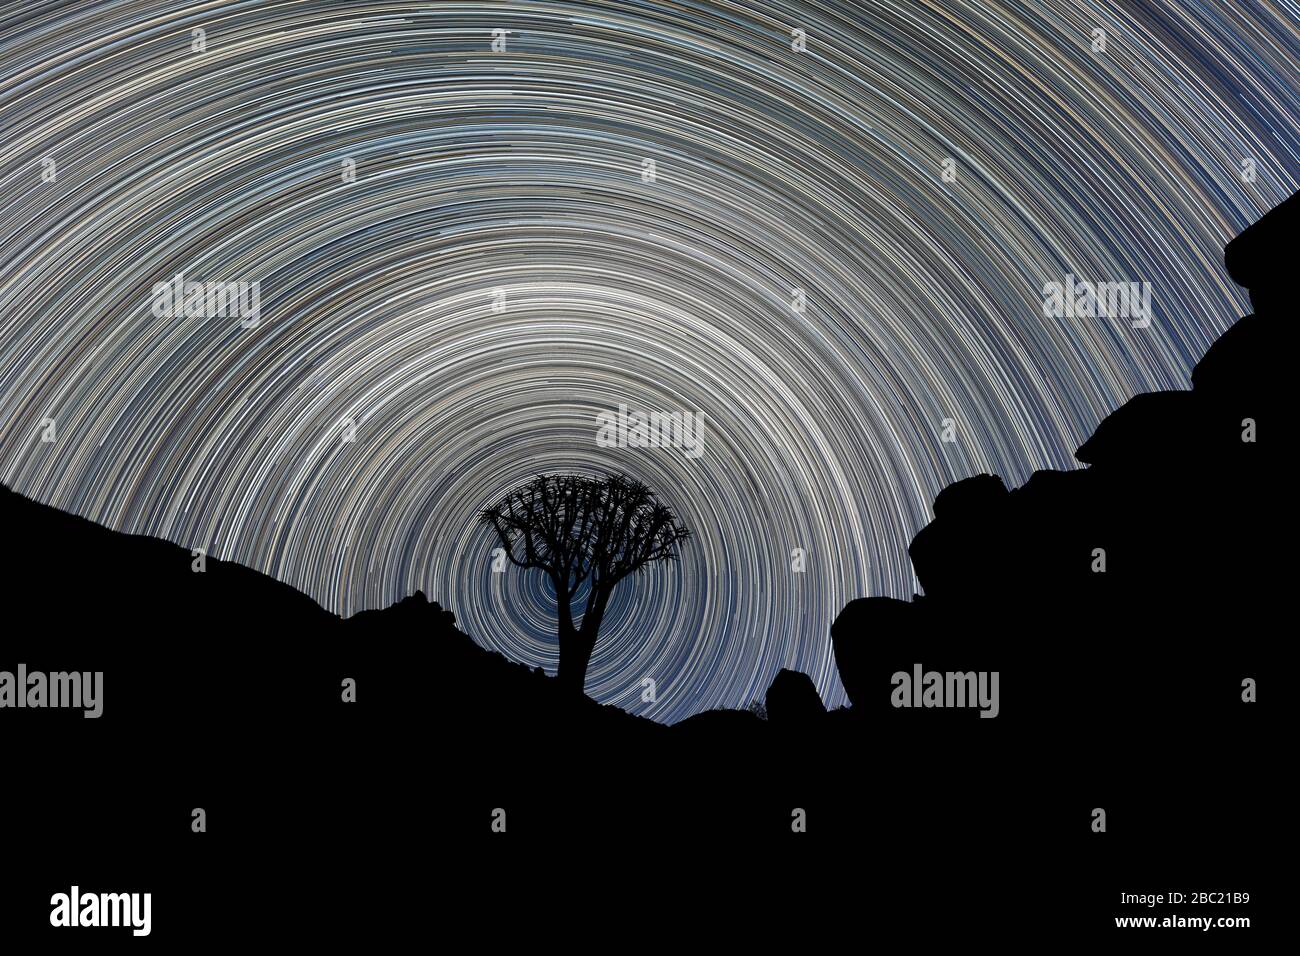 Una hermosa fotografía del cielo nocturno de un árbol de buzo con siluetas enmarcado por montañas rocosas, con senderos estelares circulares que crean un vórtice alrededor del árbol, Foto de stock